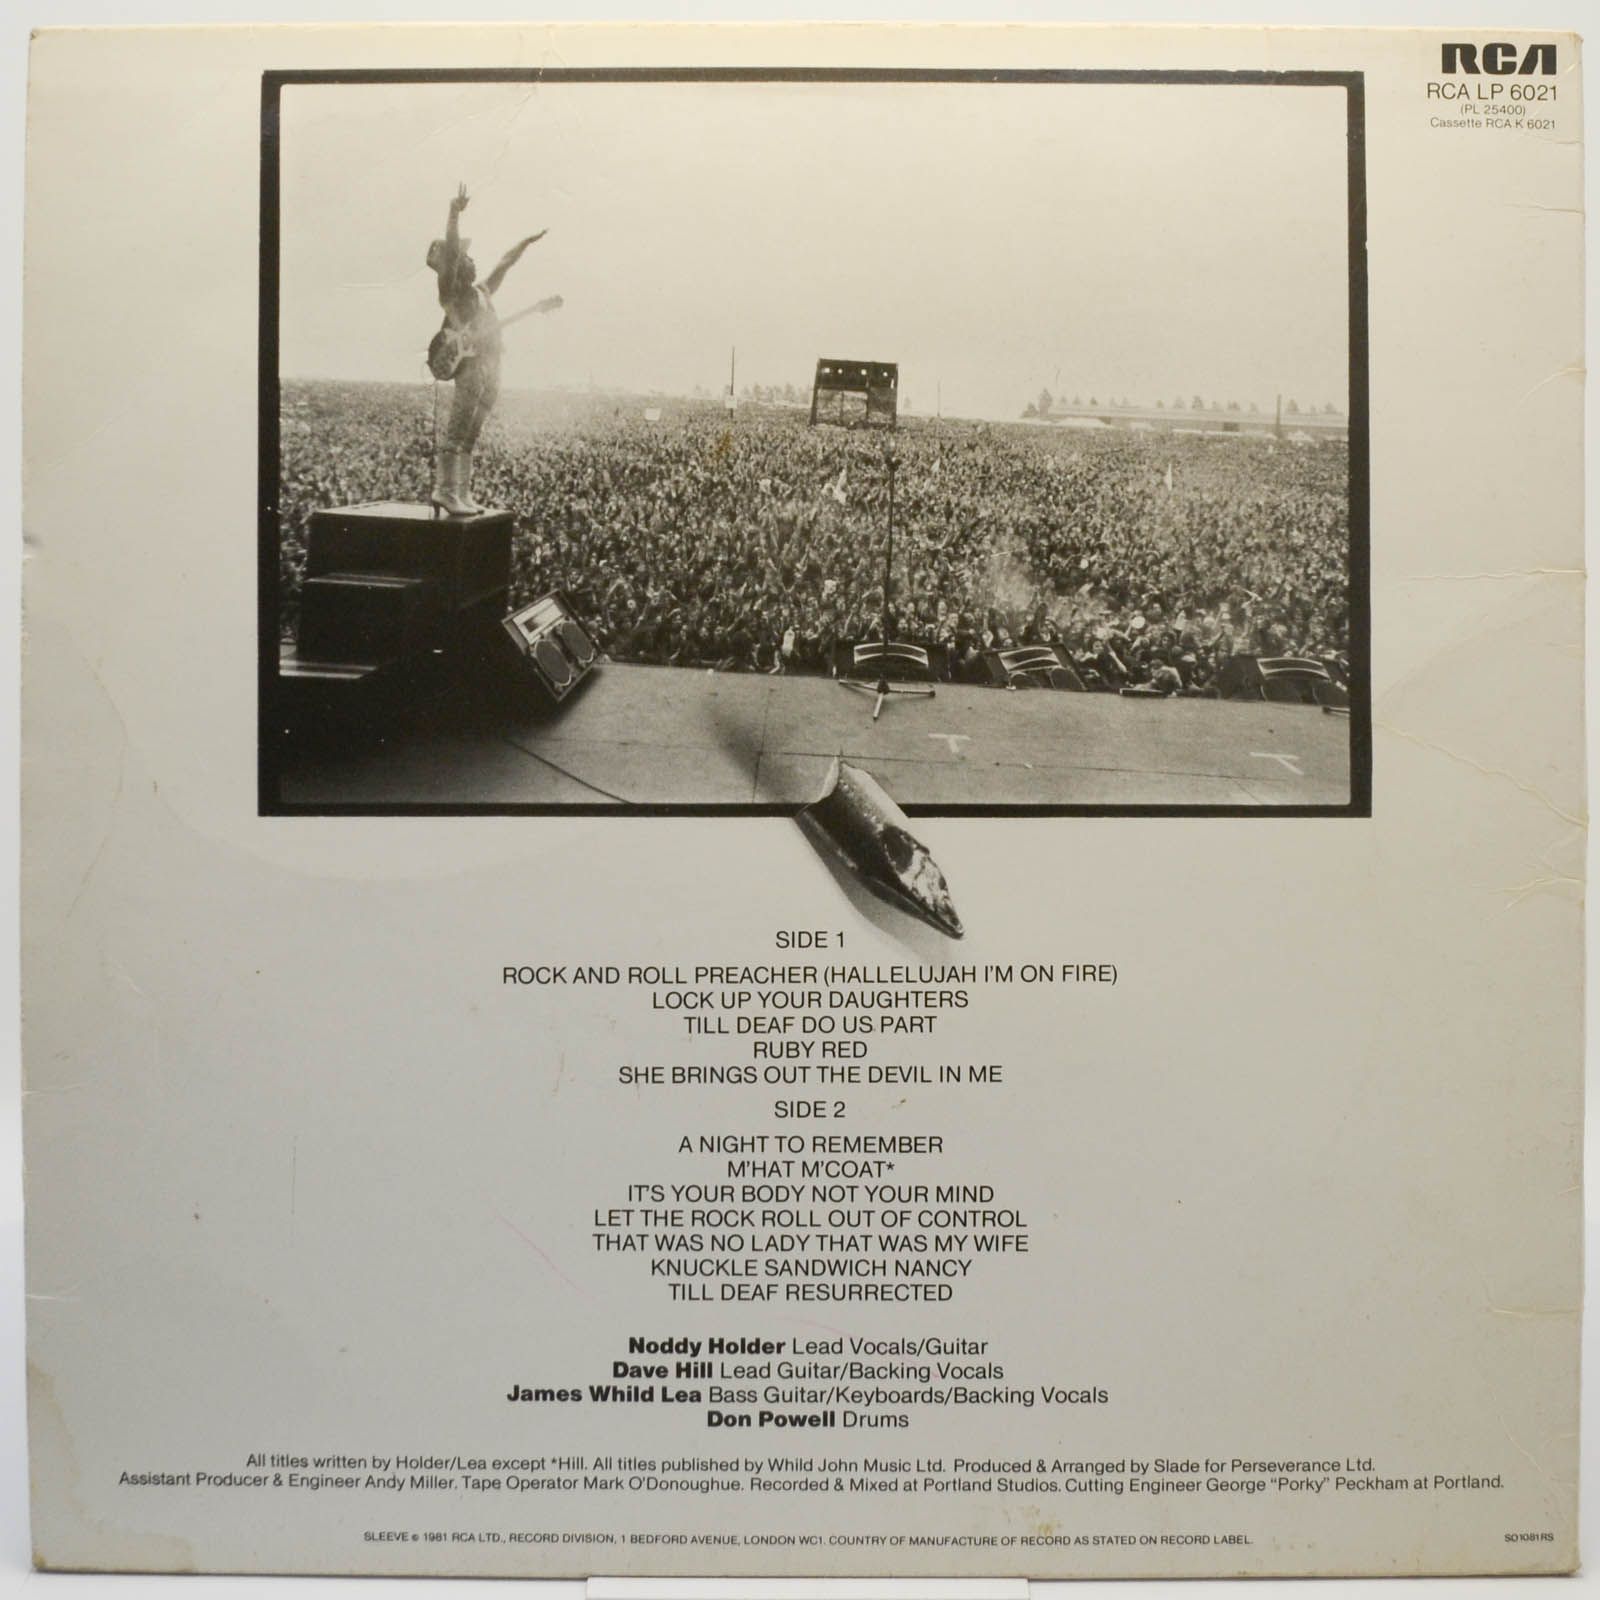 Slade — Till Deaf Do Us Part (1-st, UK), 1981